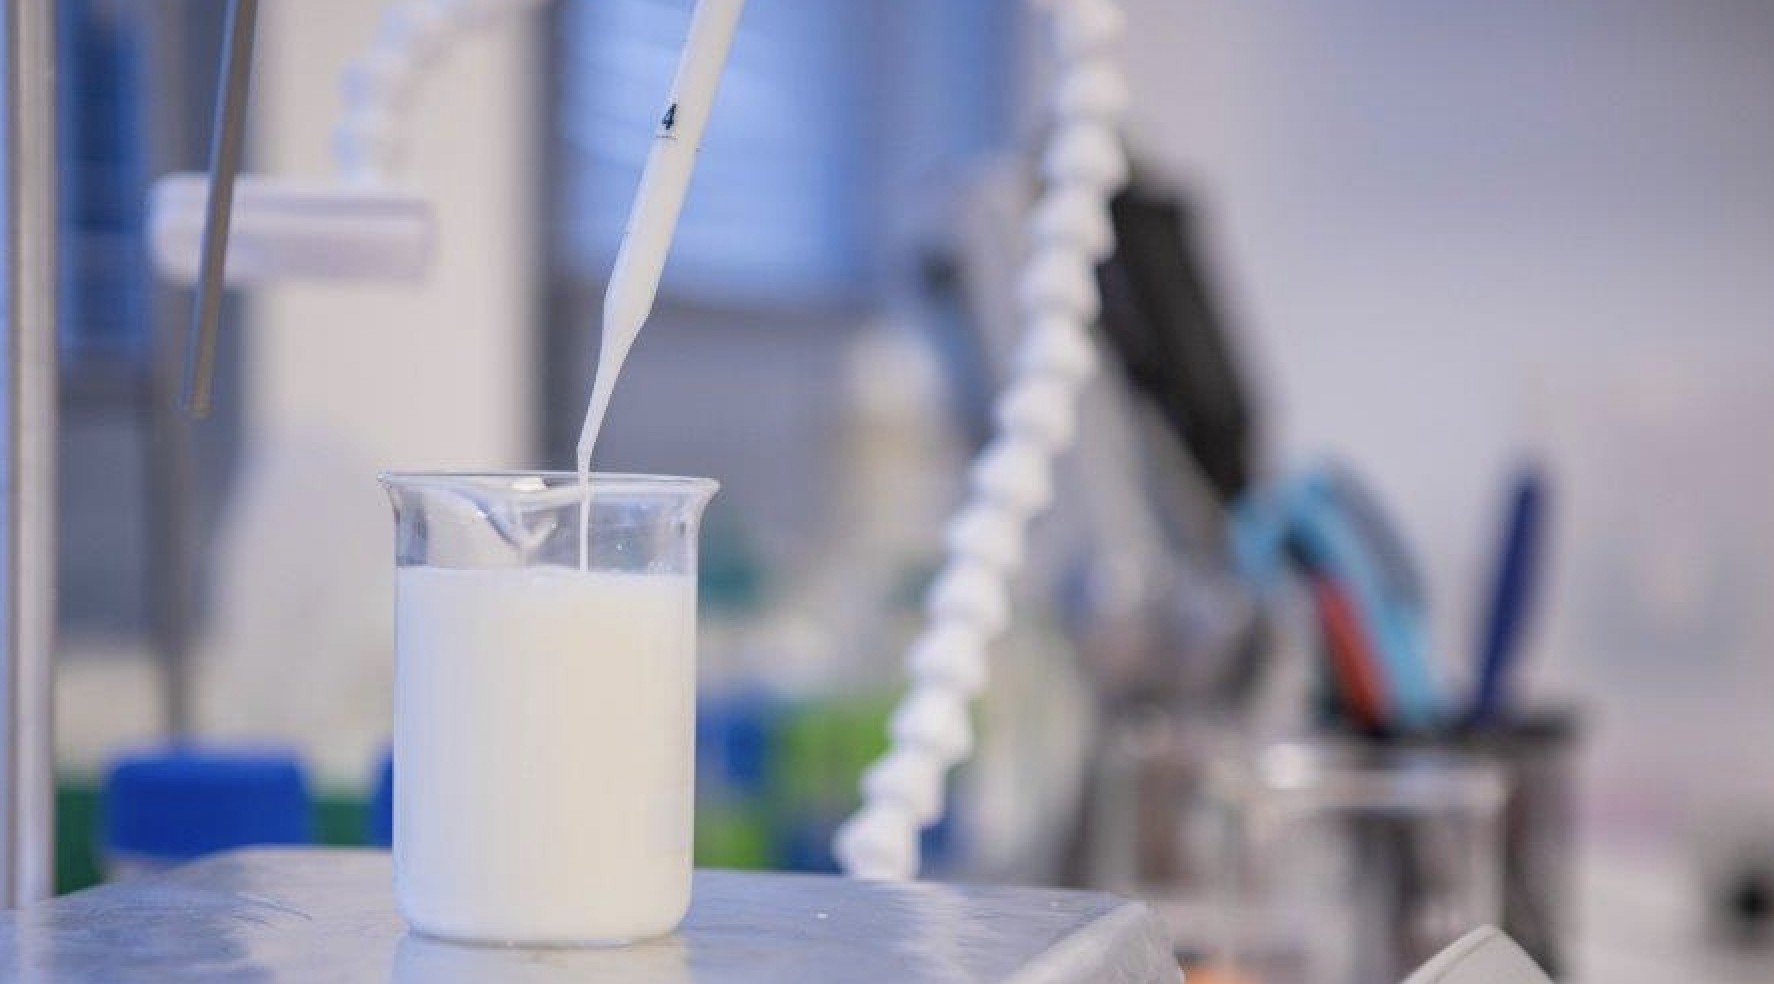 Remilk's lab-grown milk